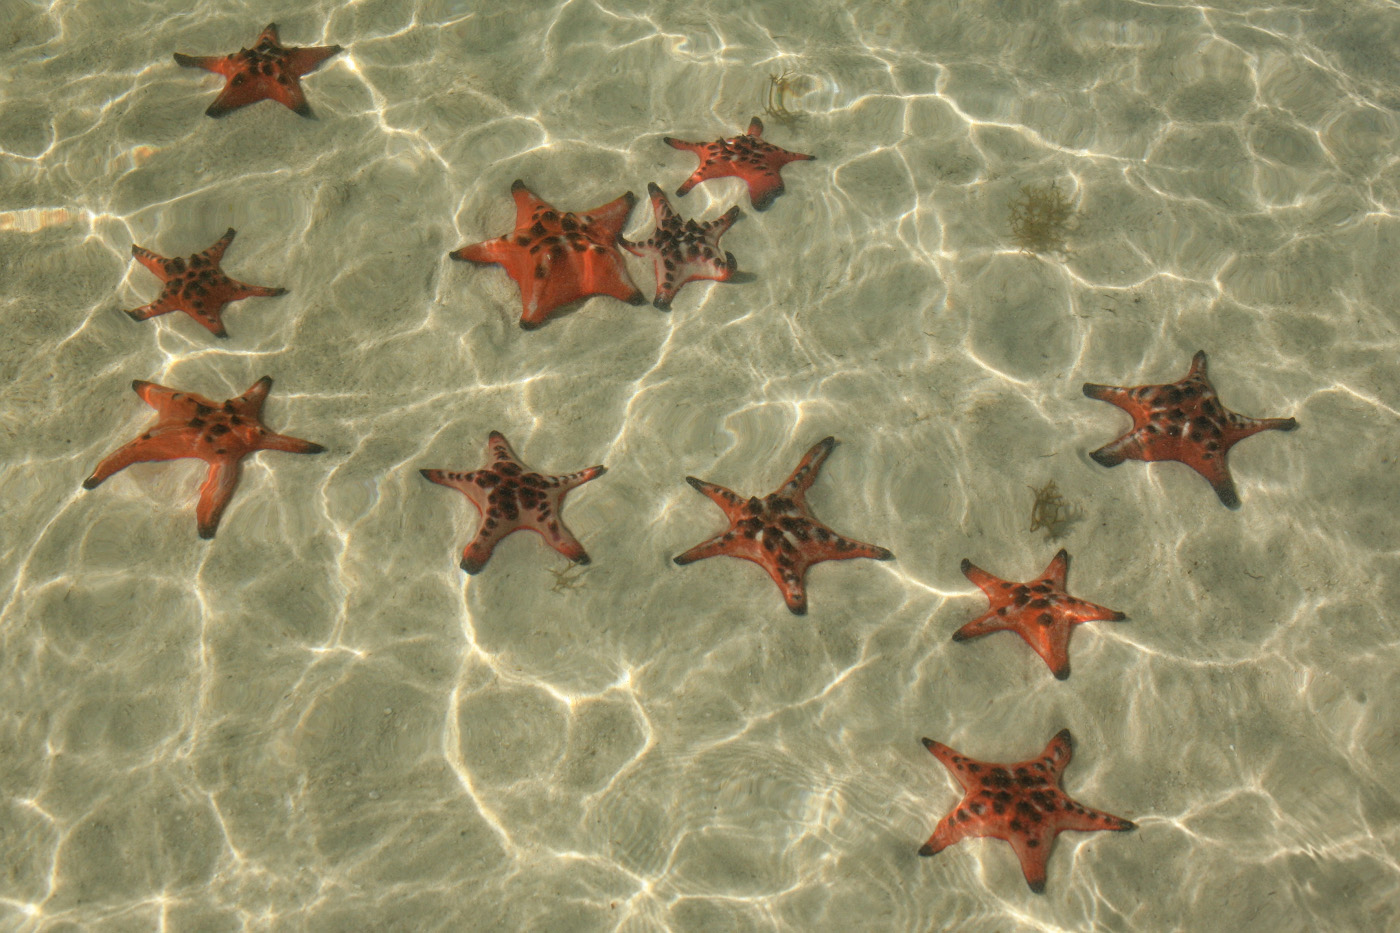 19. Морские звёзды, давшие название пляжу Bai Rach Vem (Starfish Beach). 1/50, 18.0, 100, 80.